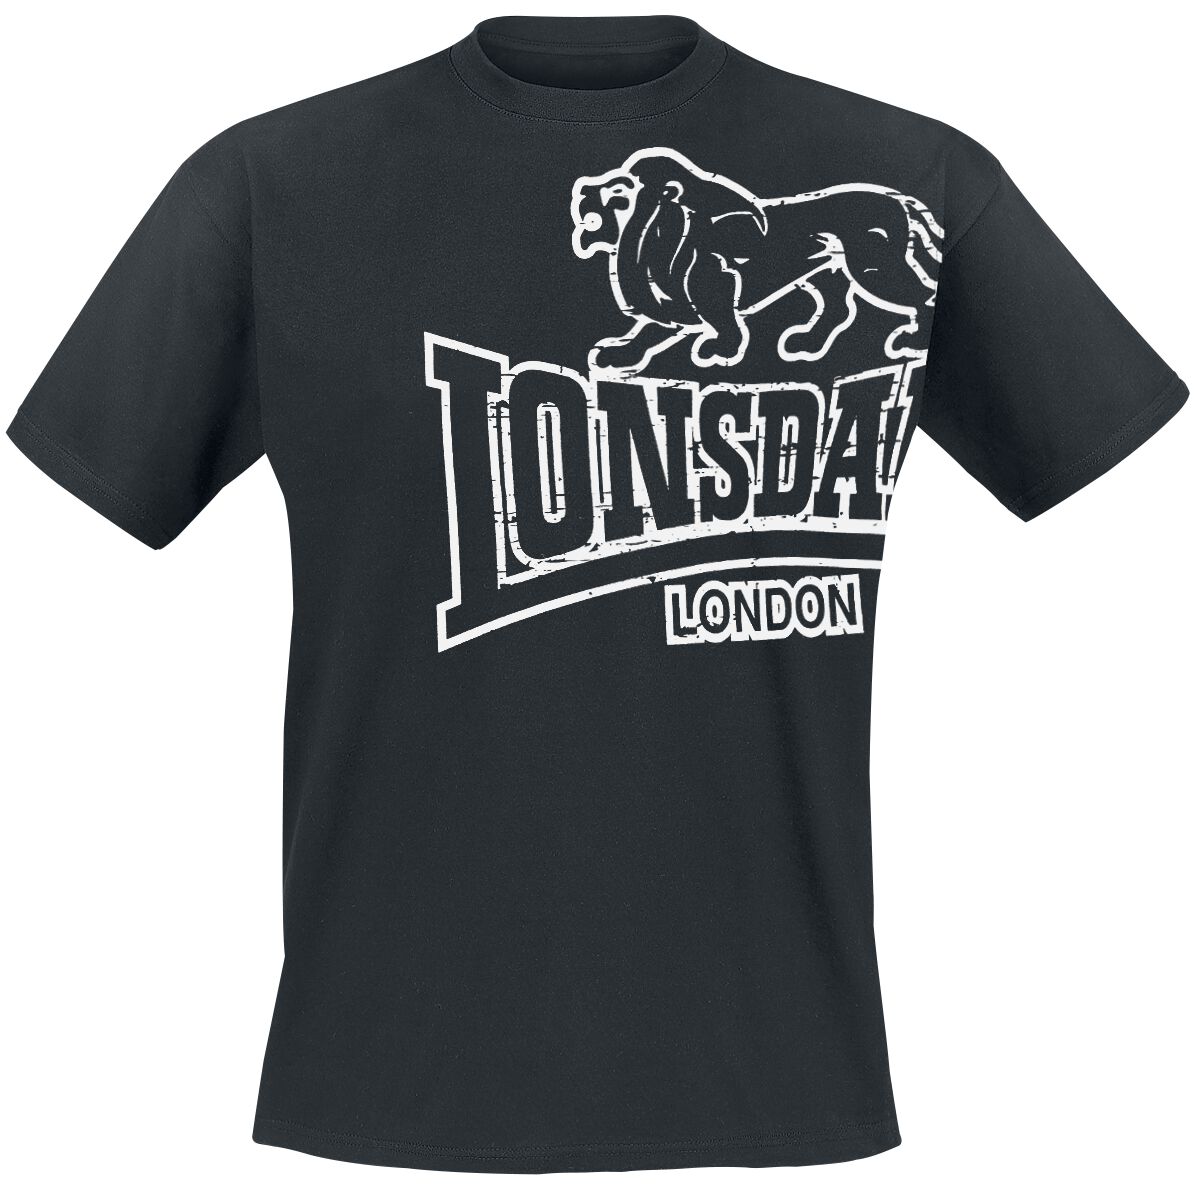 Lonsdale London T-Shirt - Langsett - M bis 5XL - für Männer - Größe 4XL - schwarz